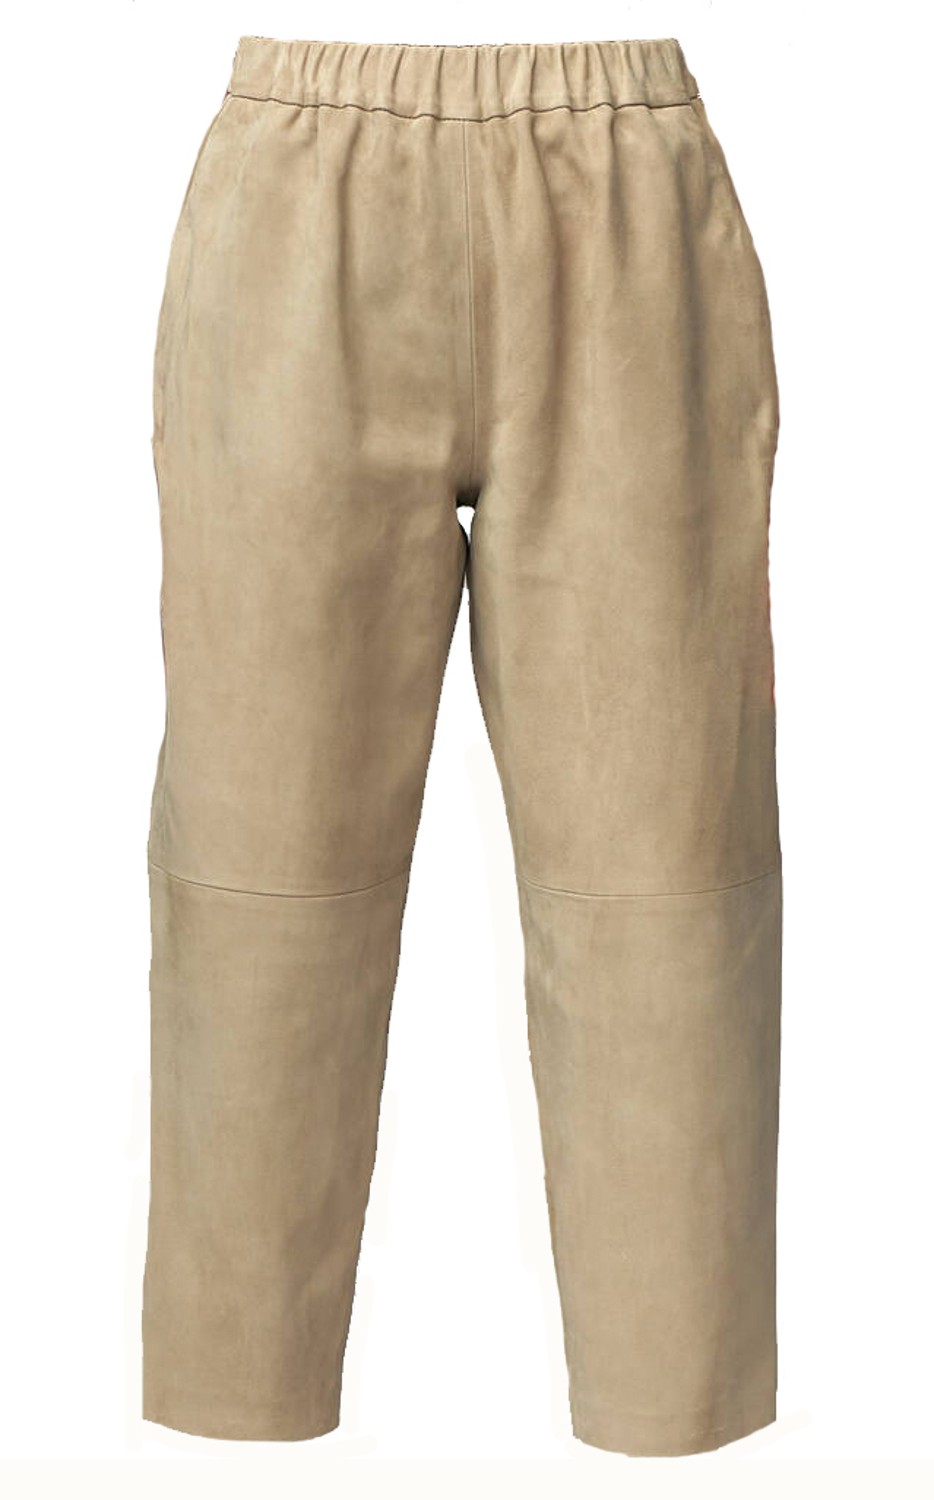 shop Dusan  Pantaloni: Pantaloni Dusan, in pelle scamosciata, modello cropped, lunghezza alla caviglia, elastico in vita, tasche laterali.

Composizione: 100% pelle. number 1751